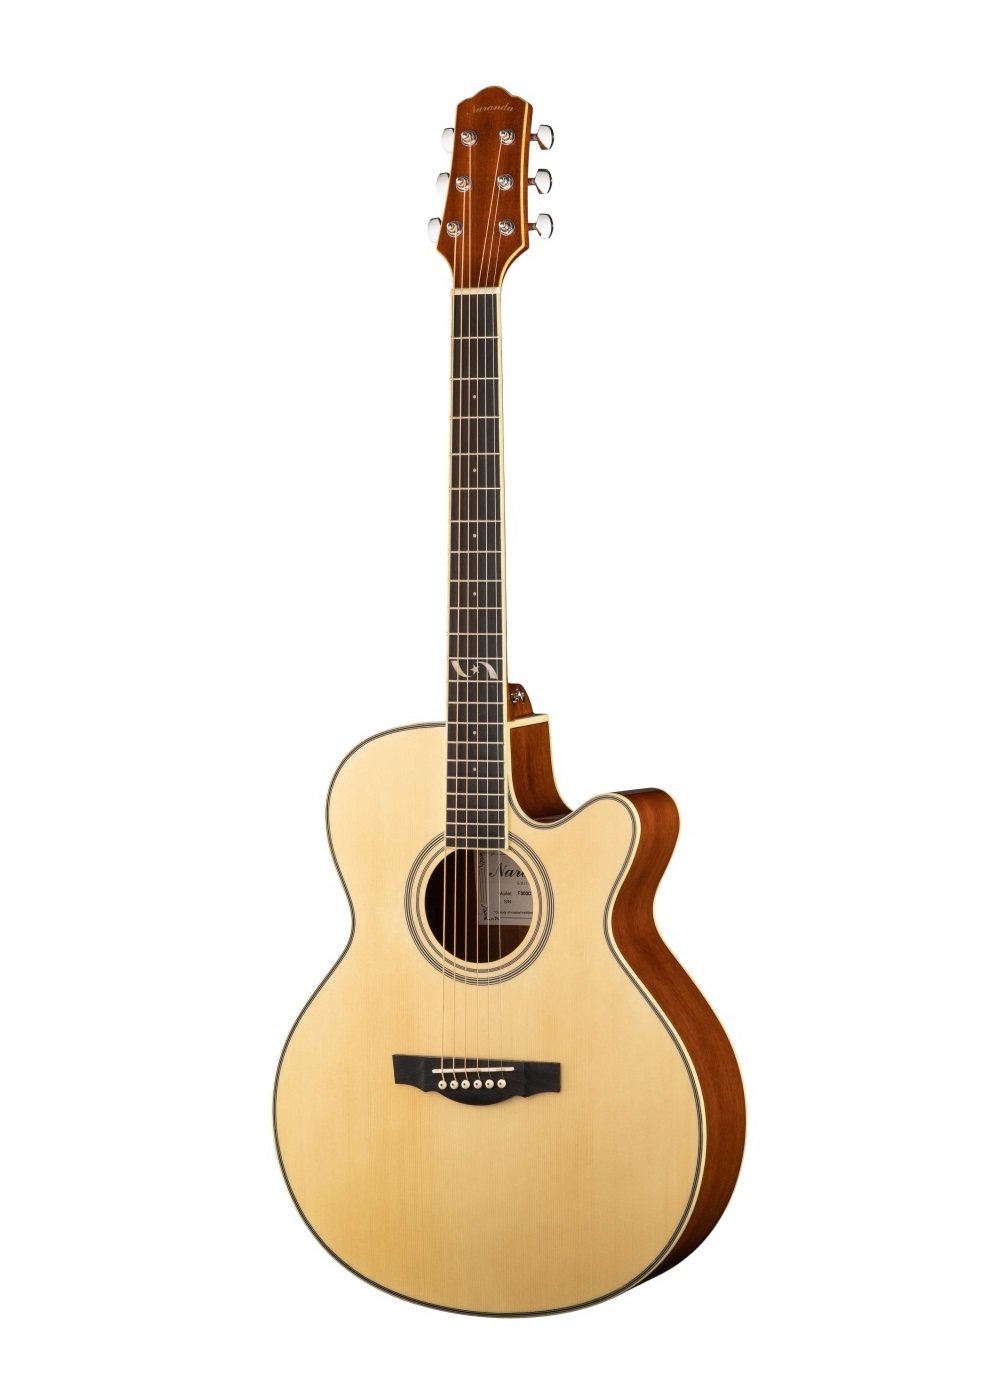 Акустические гитары Naranda F303CNA гитара акустическая дерево 97см с вырезом